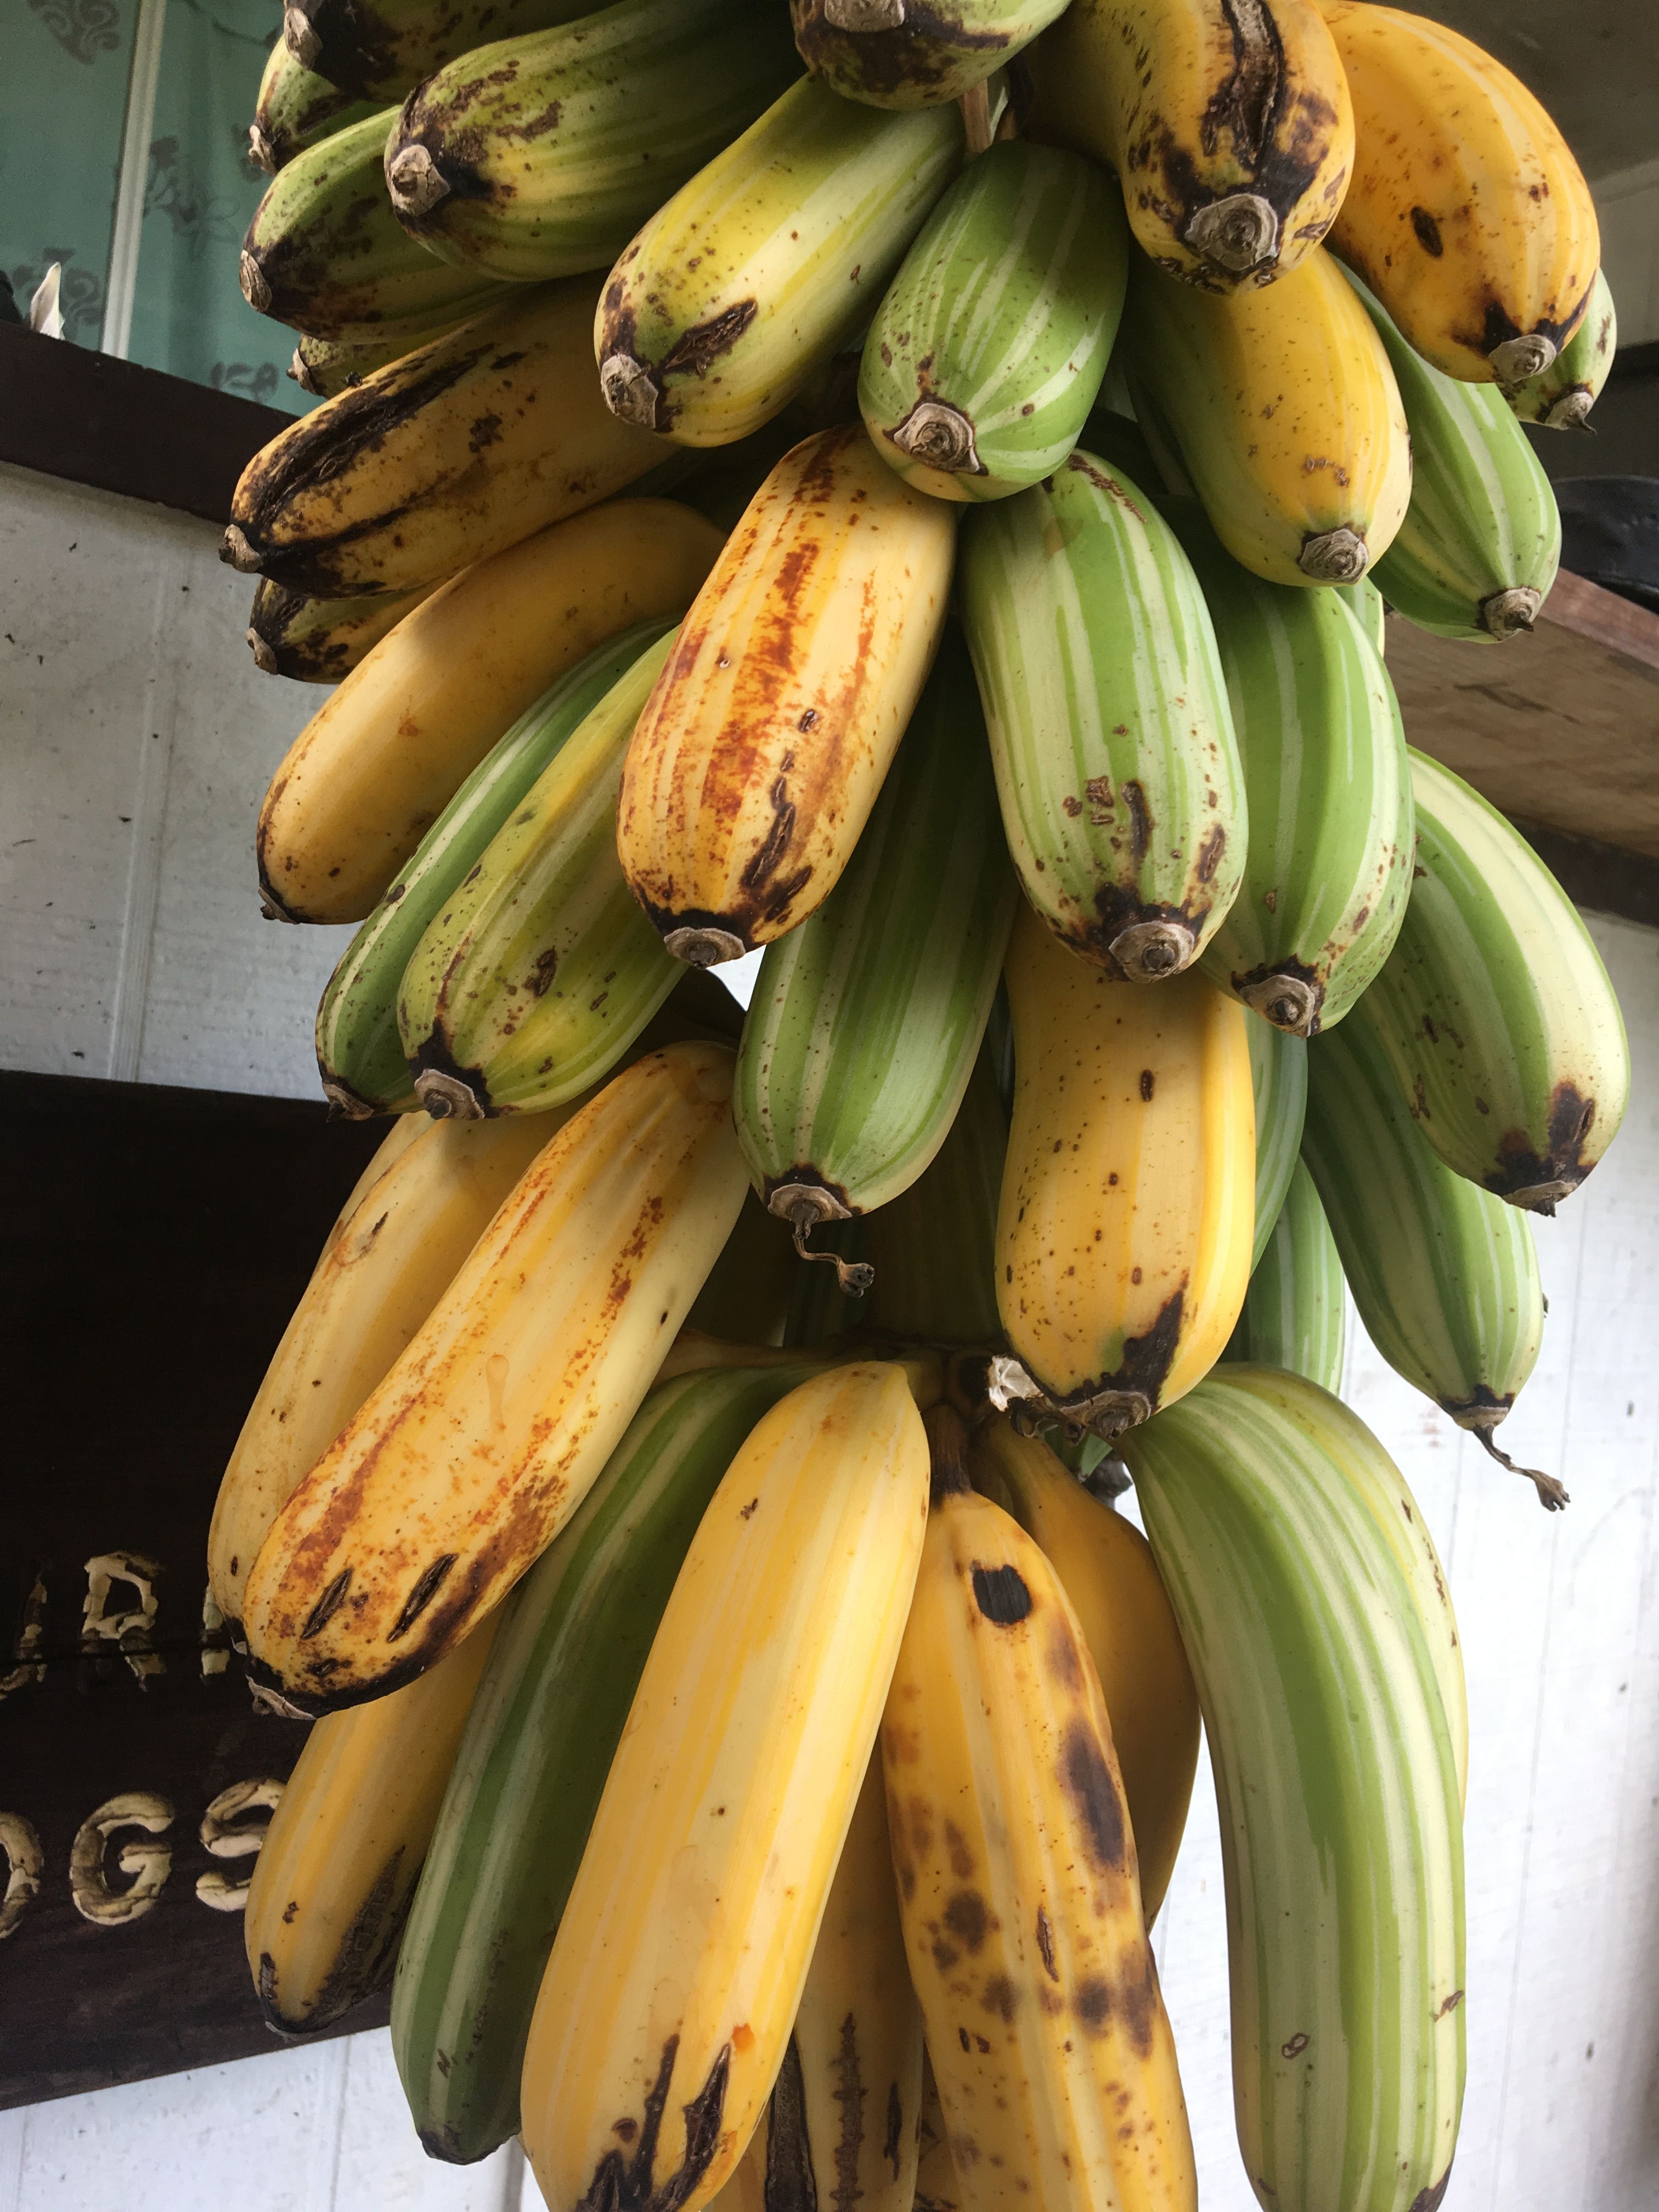 banana i vene varicoase)